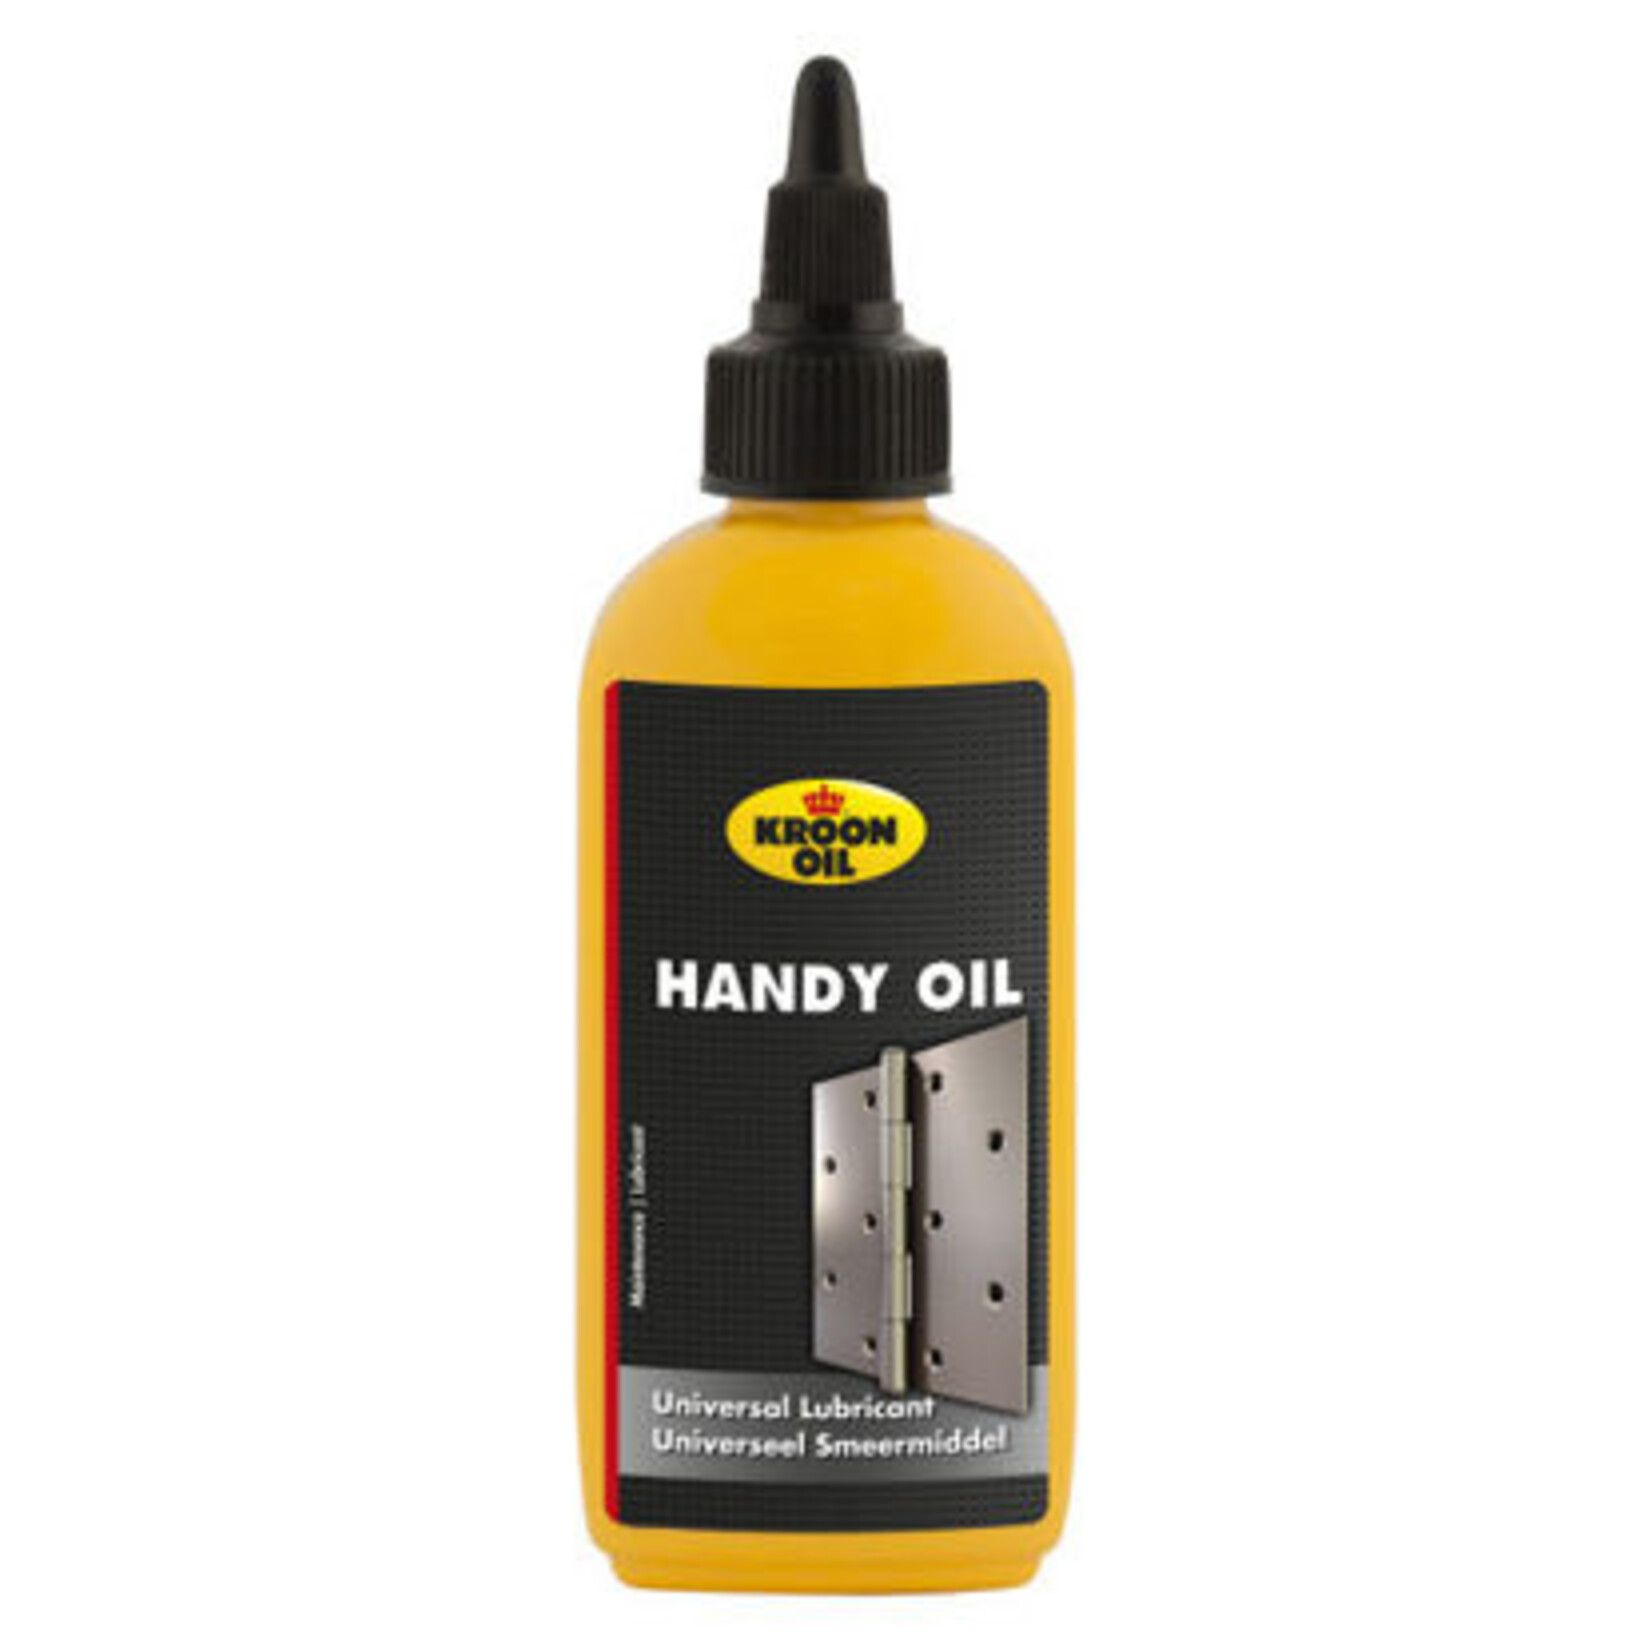 Handy oil Kroon, 100ml